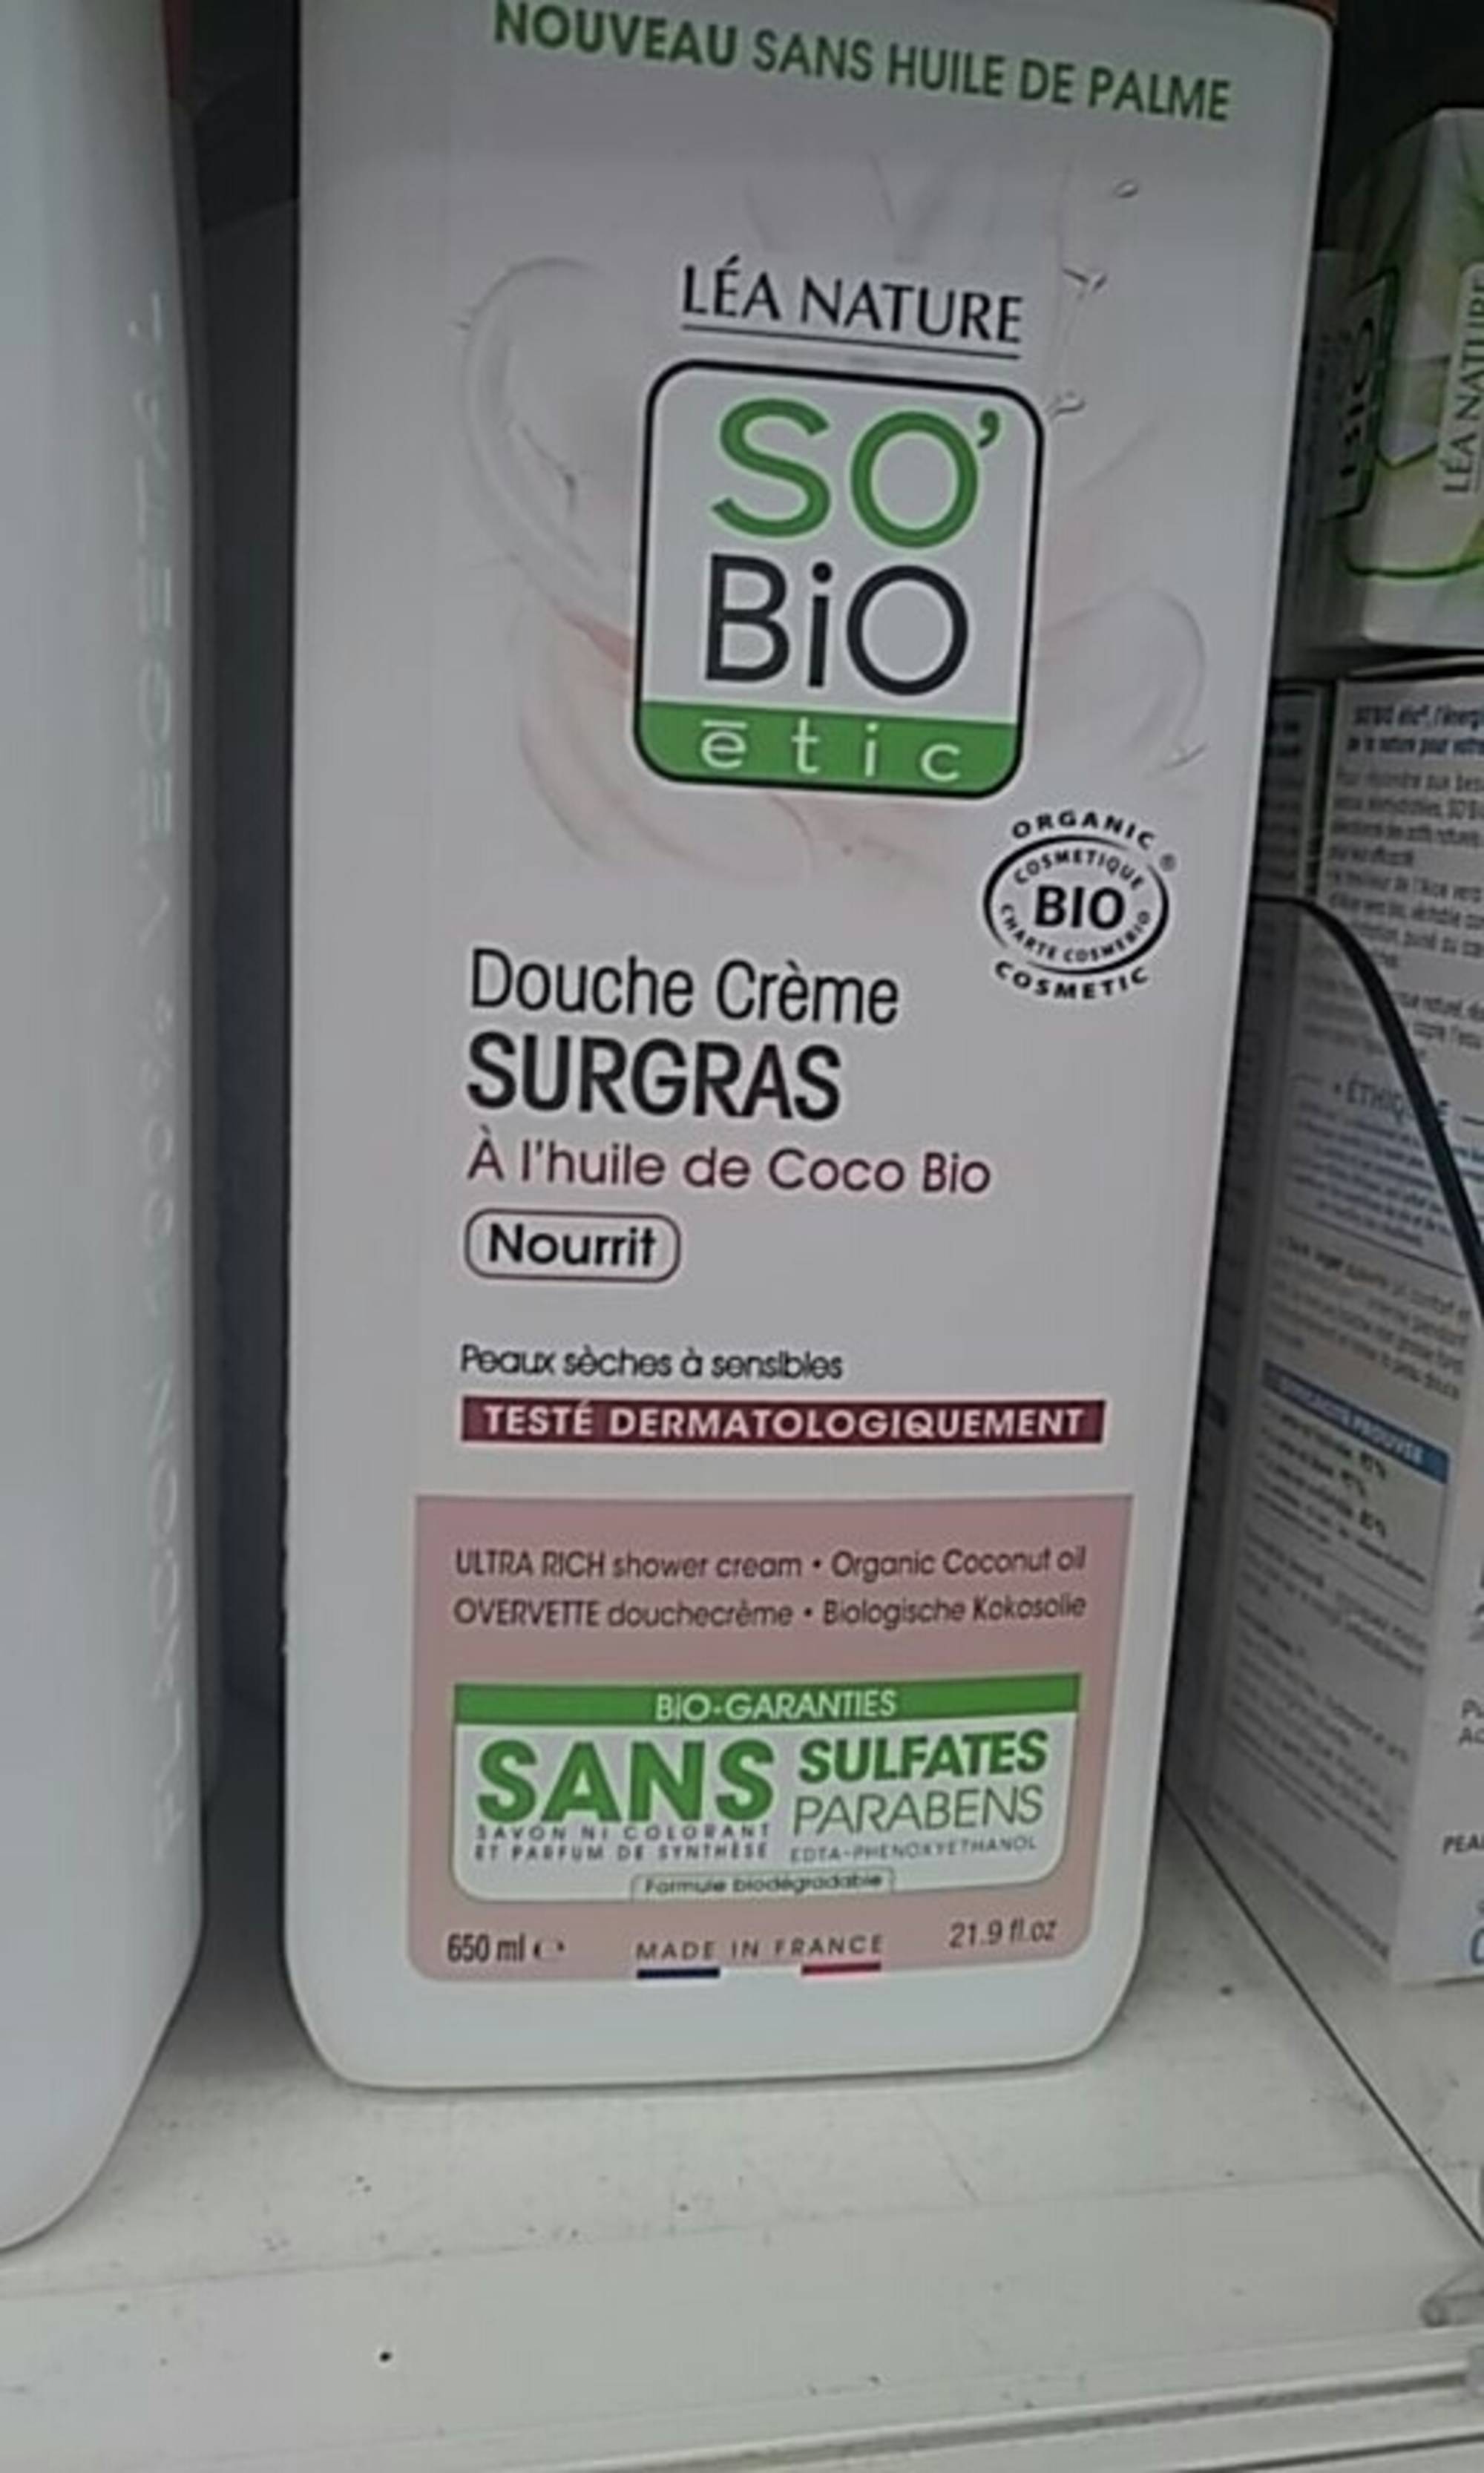 SO'BIO ÉTIC - Douche crème surgras à l'huile de coco bio